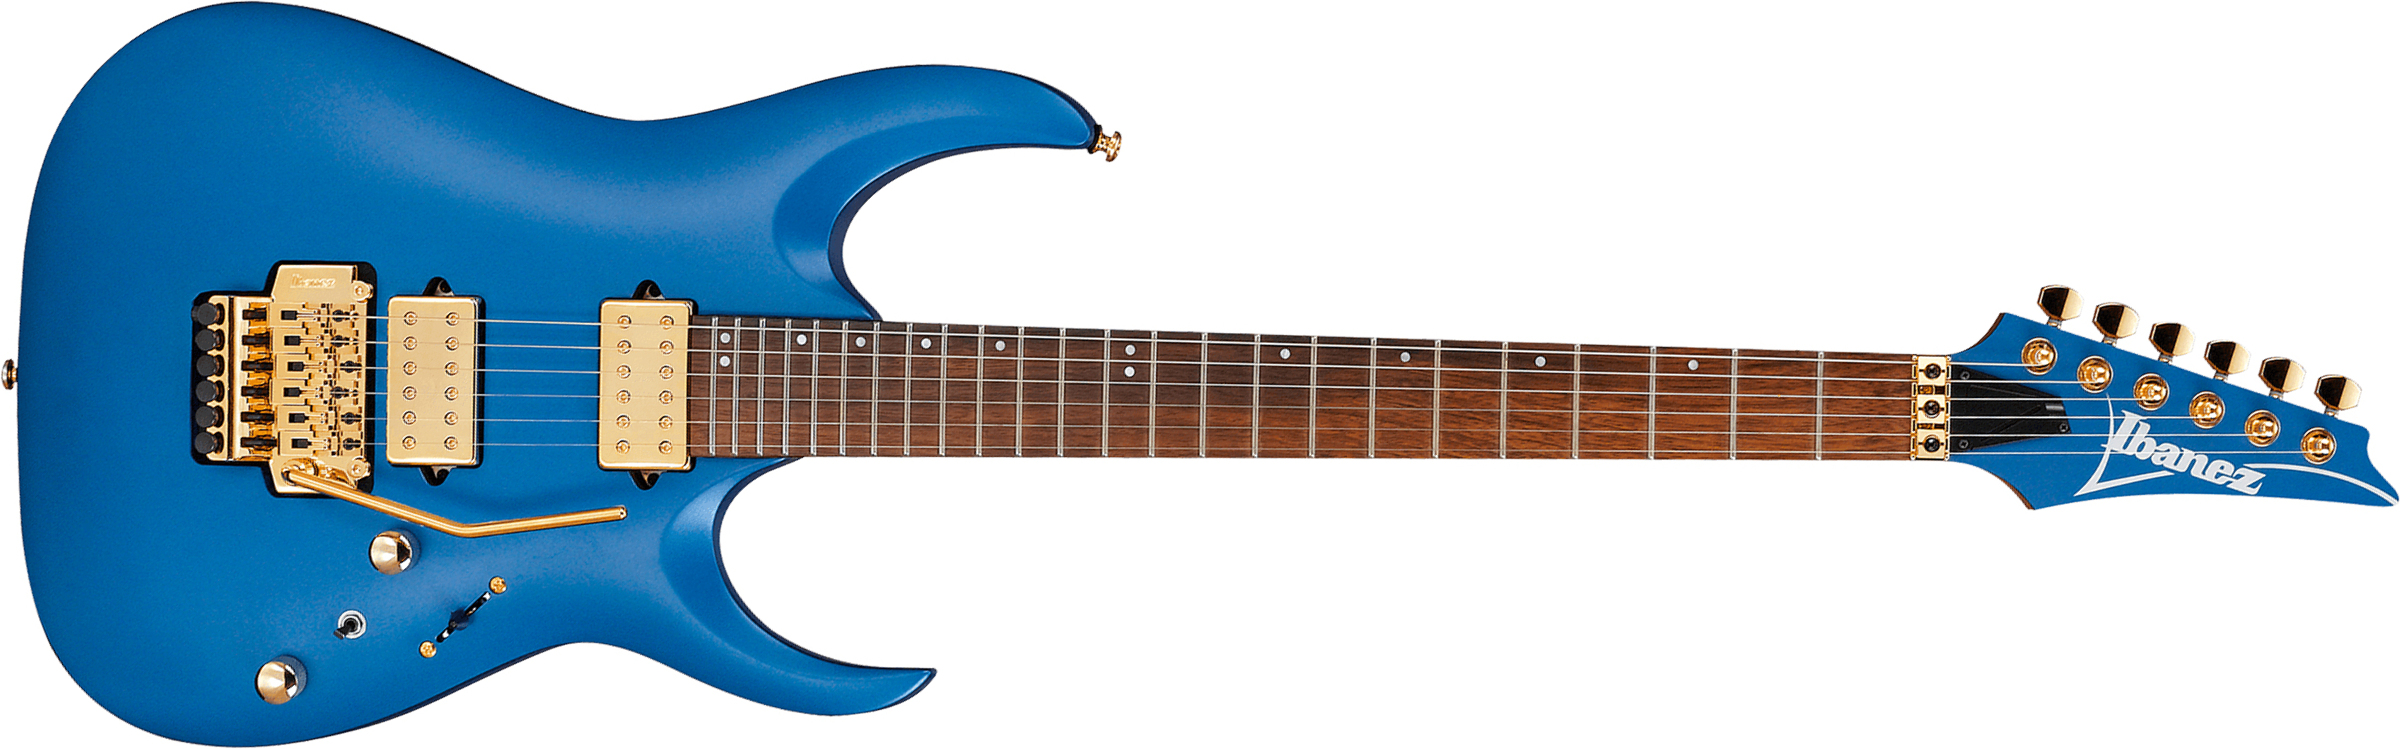 Ibanez Rga42hpt Lbm Standard  Hh Fr Jat - Laser Blue Matte - E-Gitarre in Str-Form - Main picture